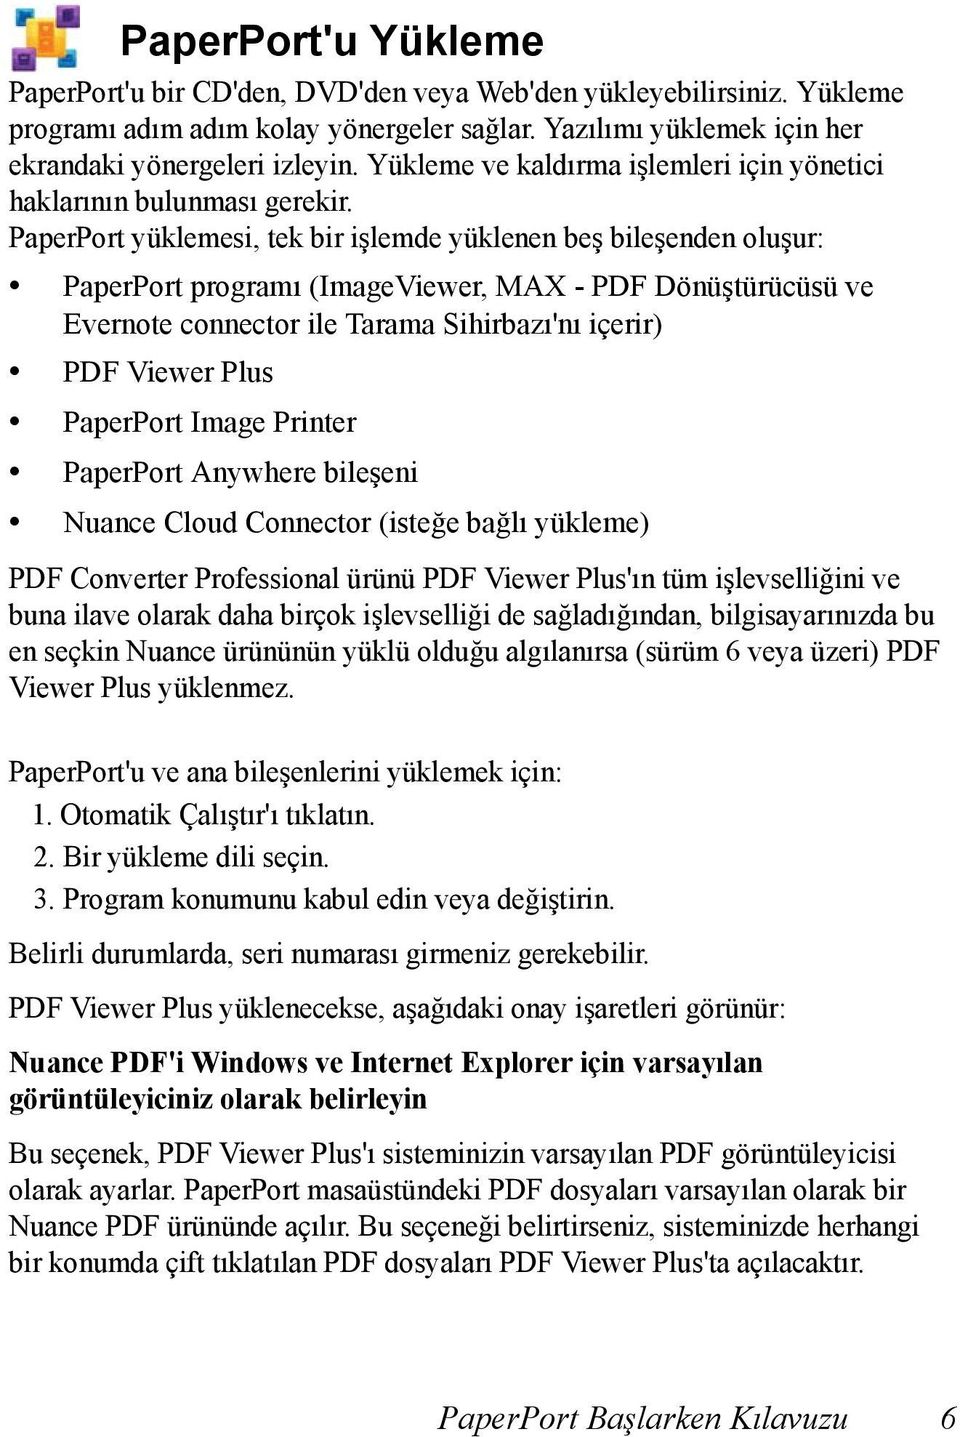 PaperPort yüklemesi, tek bir işlemde yüklenen beş bileşenden oluşur: PaperPort programı (ImageViewer, MAX - PDF Dönüştürücüsü ve Evernote connector ile Tarama Sihirbazı'nı içerir) PDF Viewer Plus